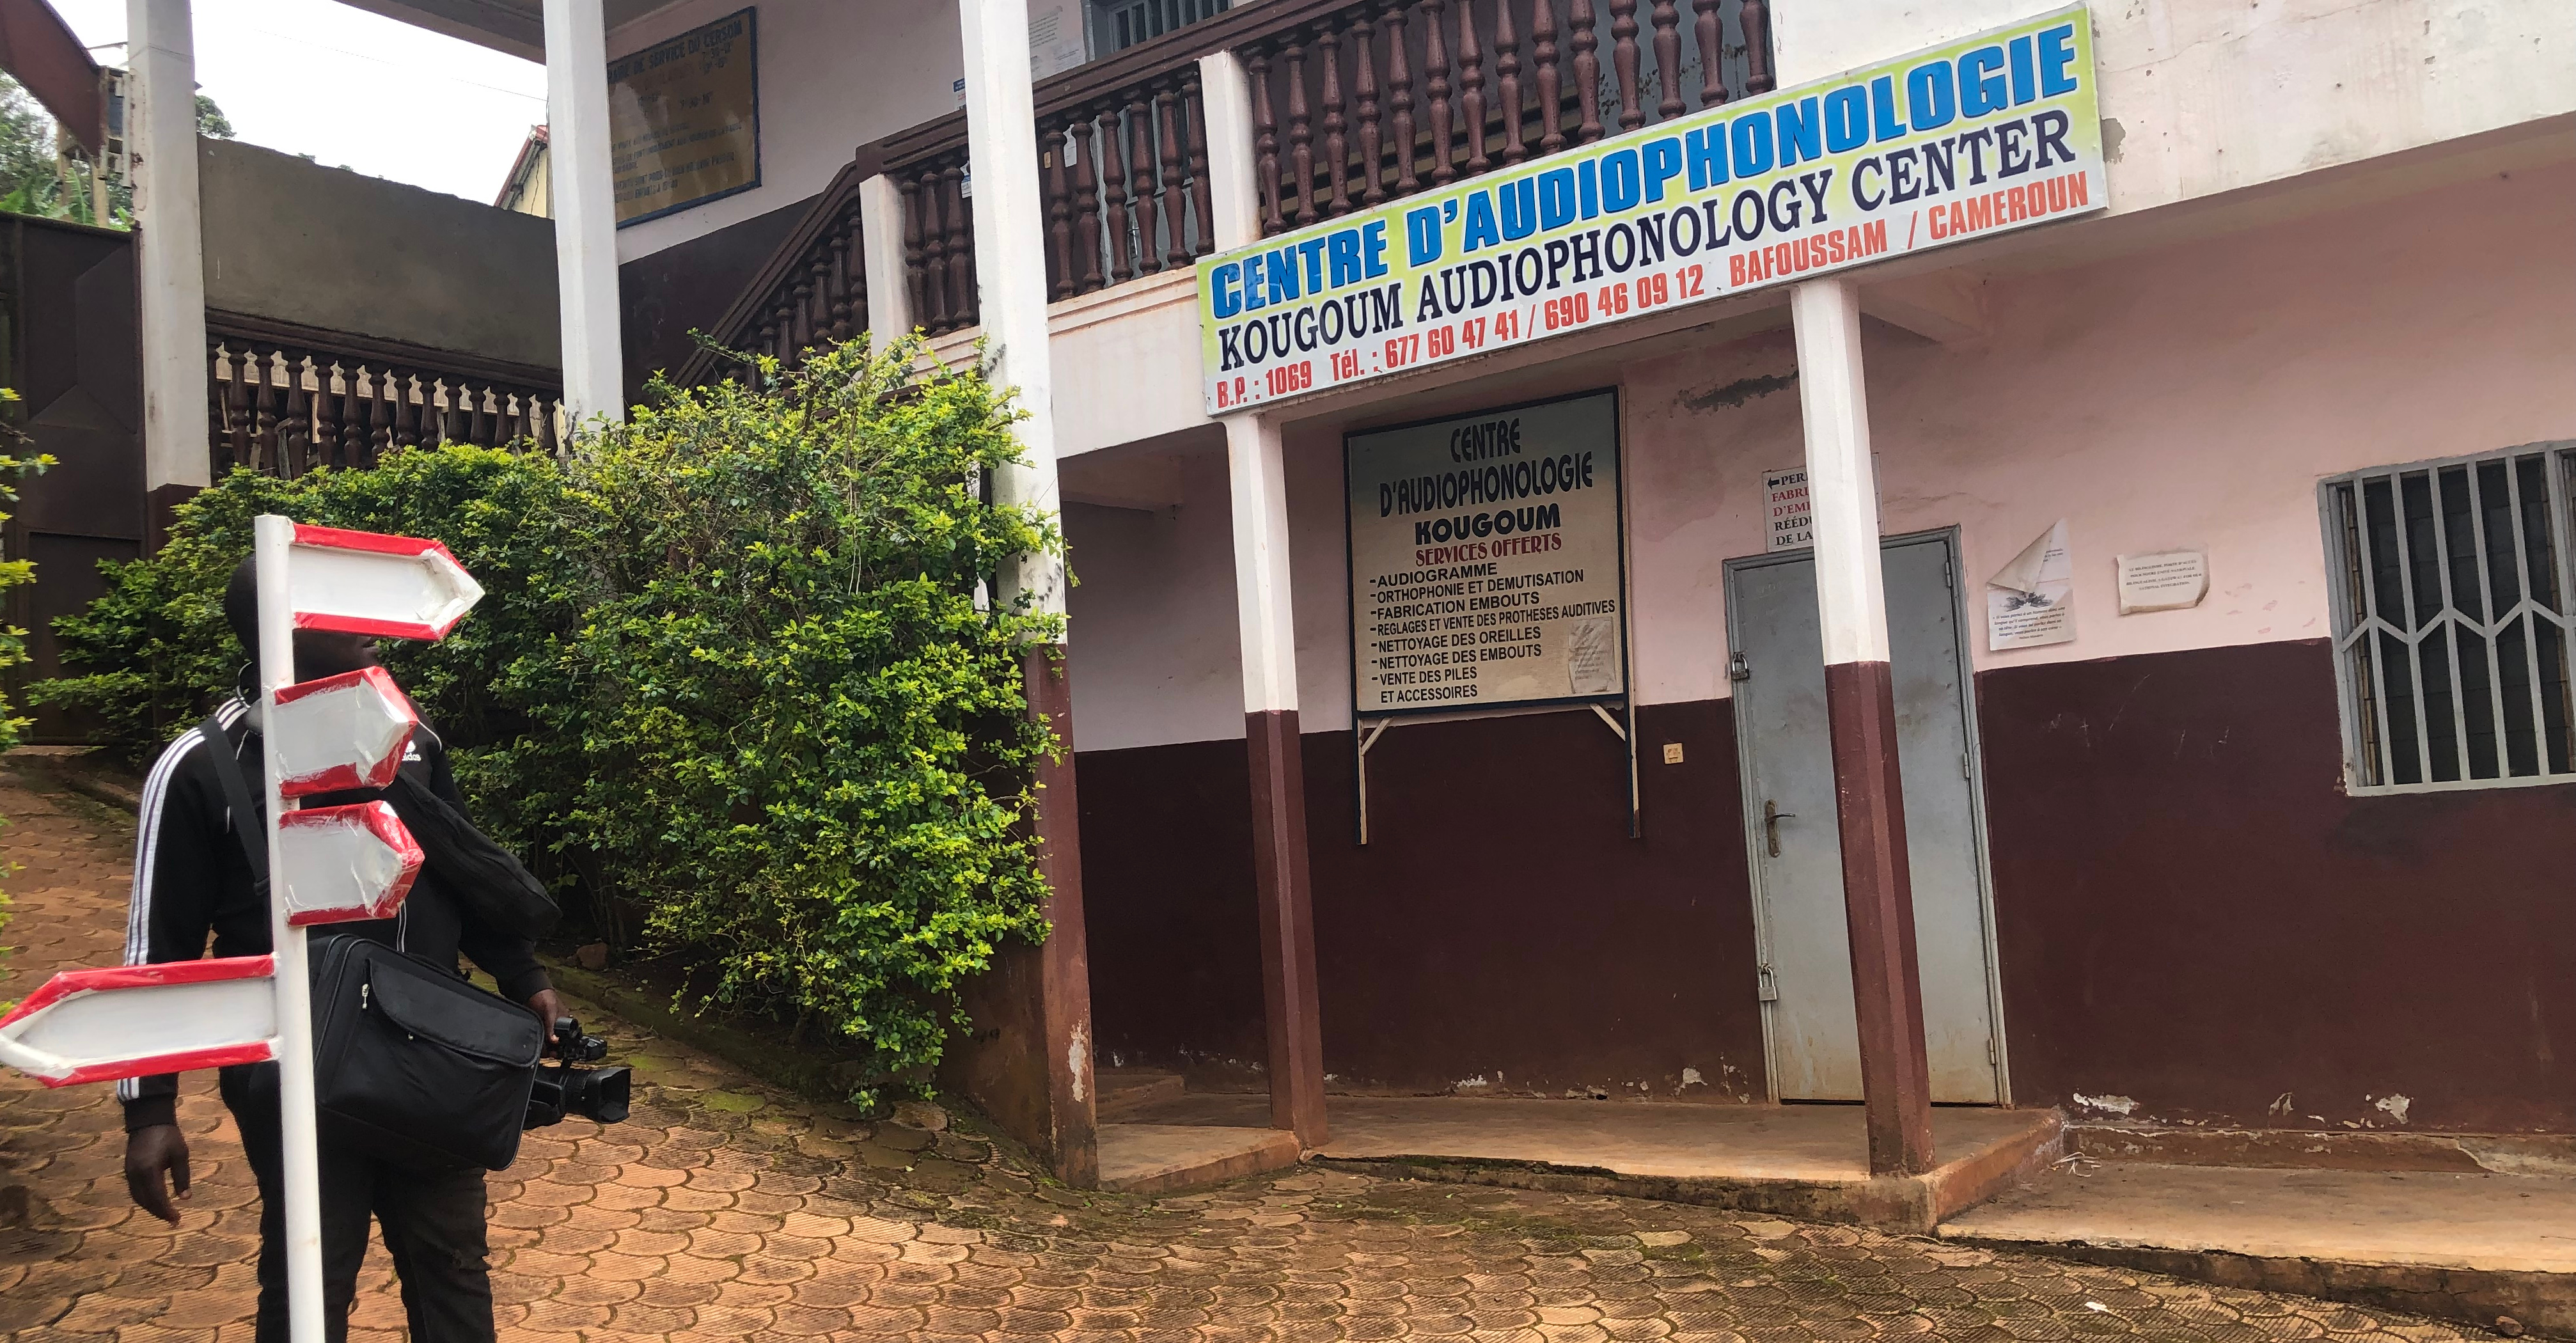 Droit à l’éducation biaisée au Cameroun. Le manque d’information retarde l’accès des sourds-muets à une formation inclusive